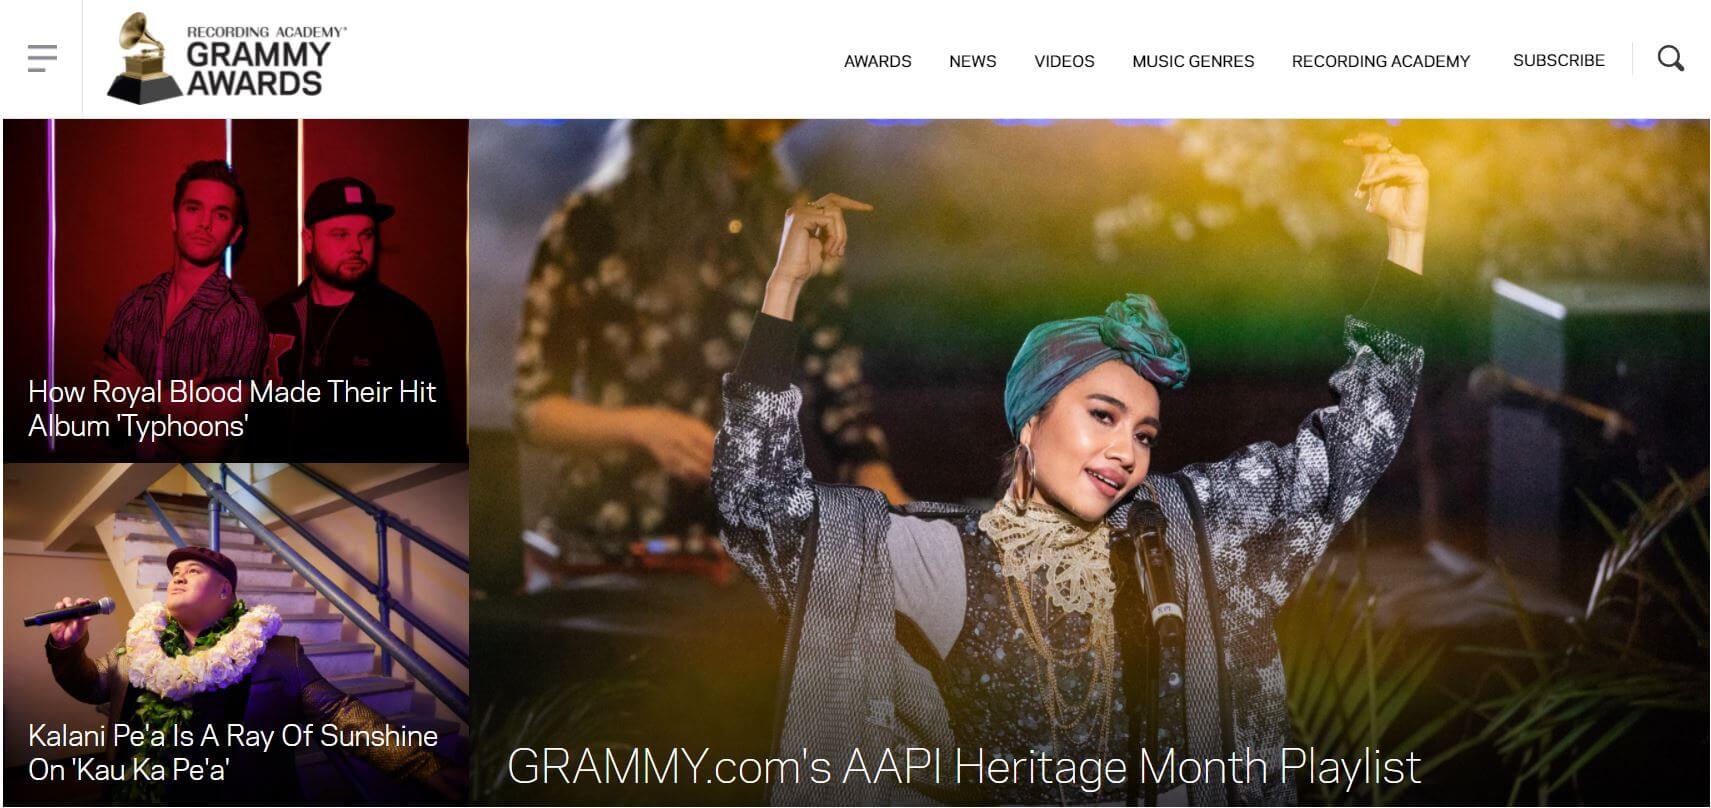 Grammy's website on Drupal